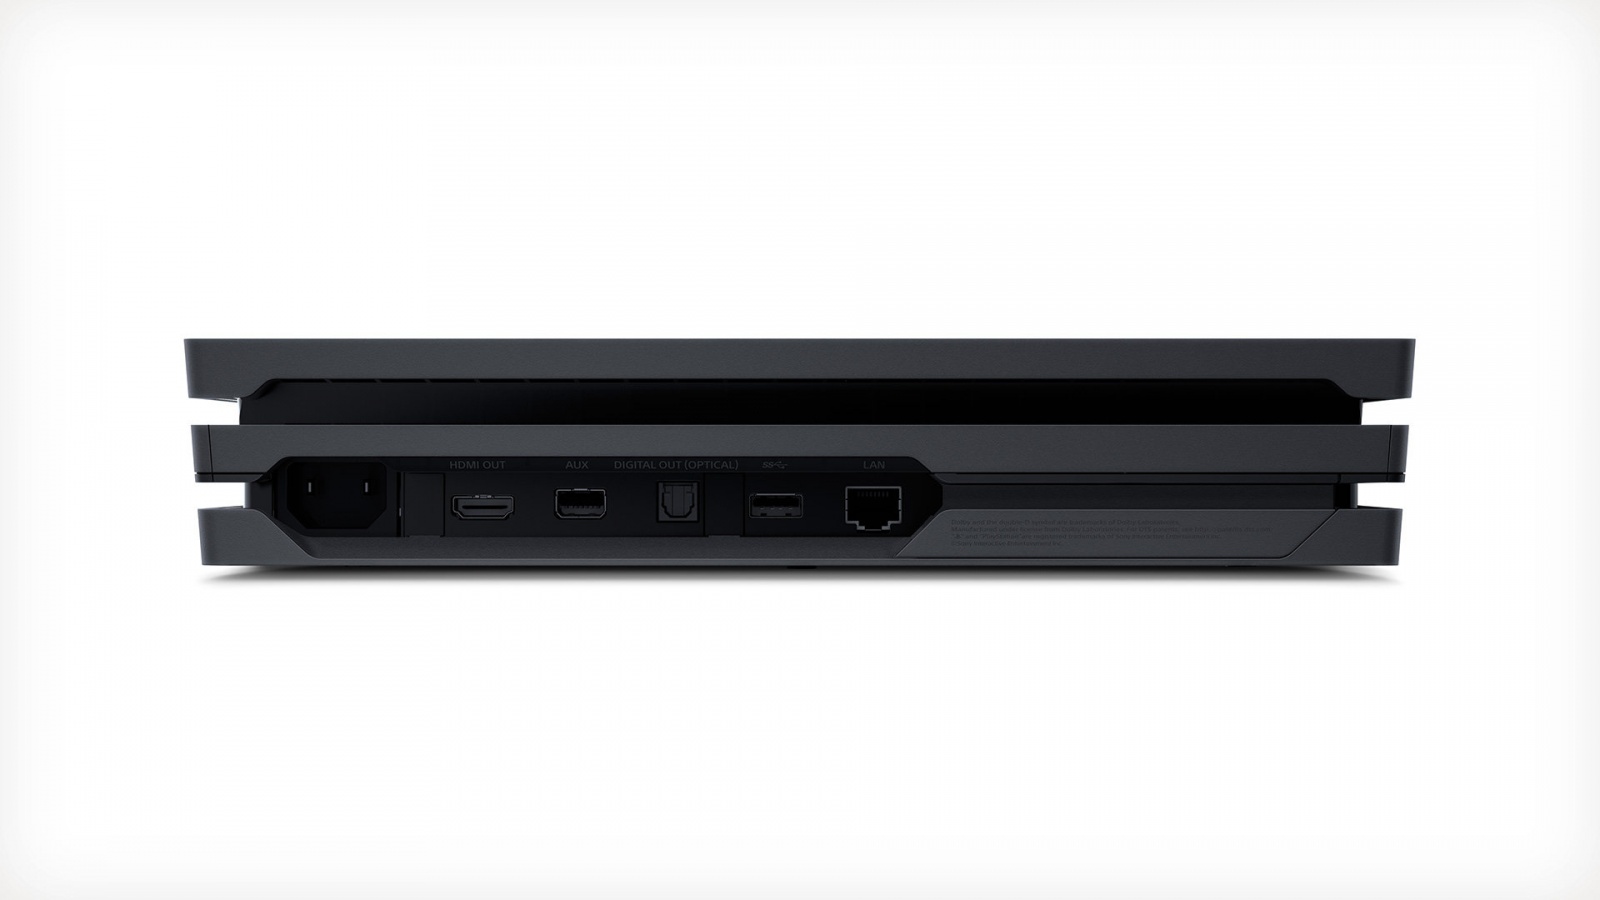 Sony PlayStation 4 Pro приставка имеет порты usb и hdmi для различных целей